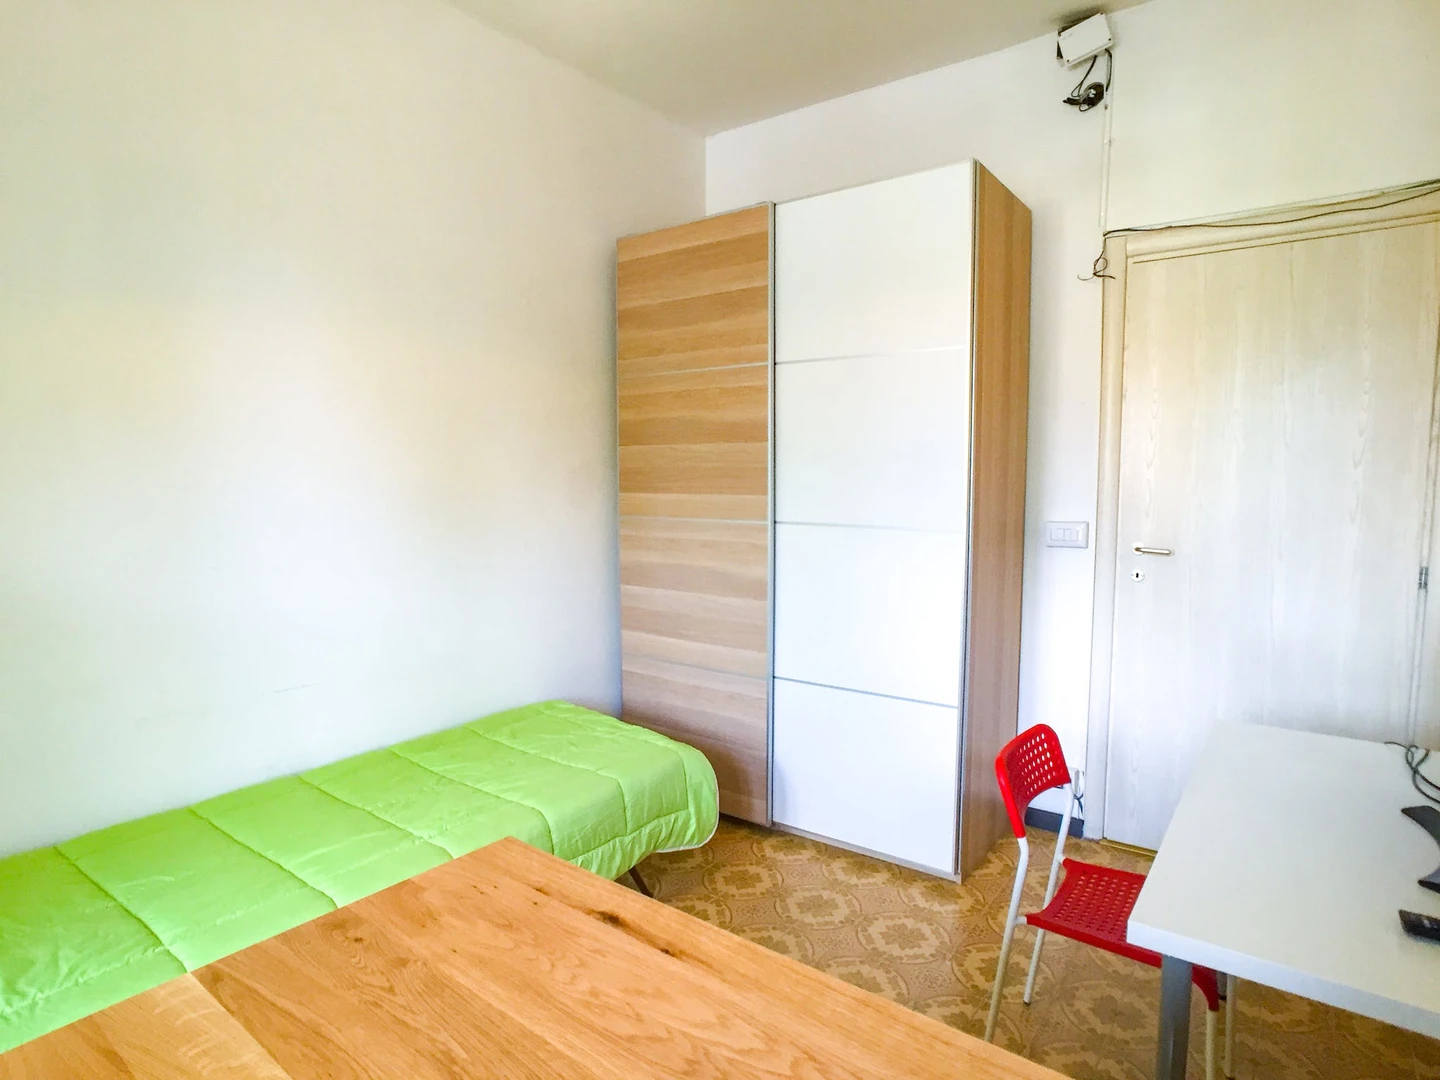 Torino de çift kişilik yataklı kiralık oda